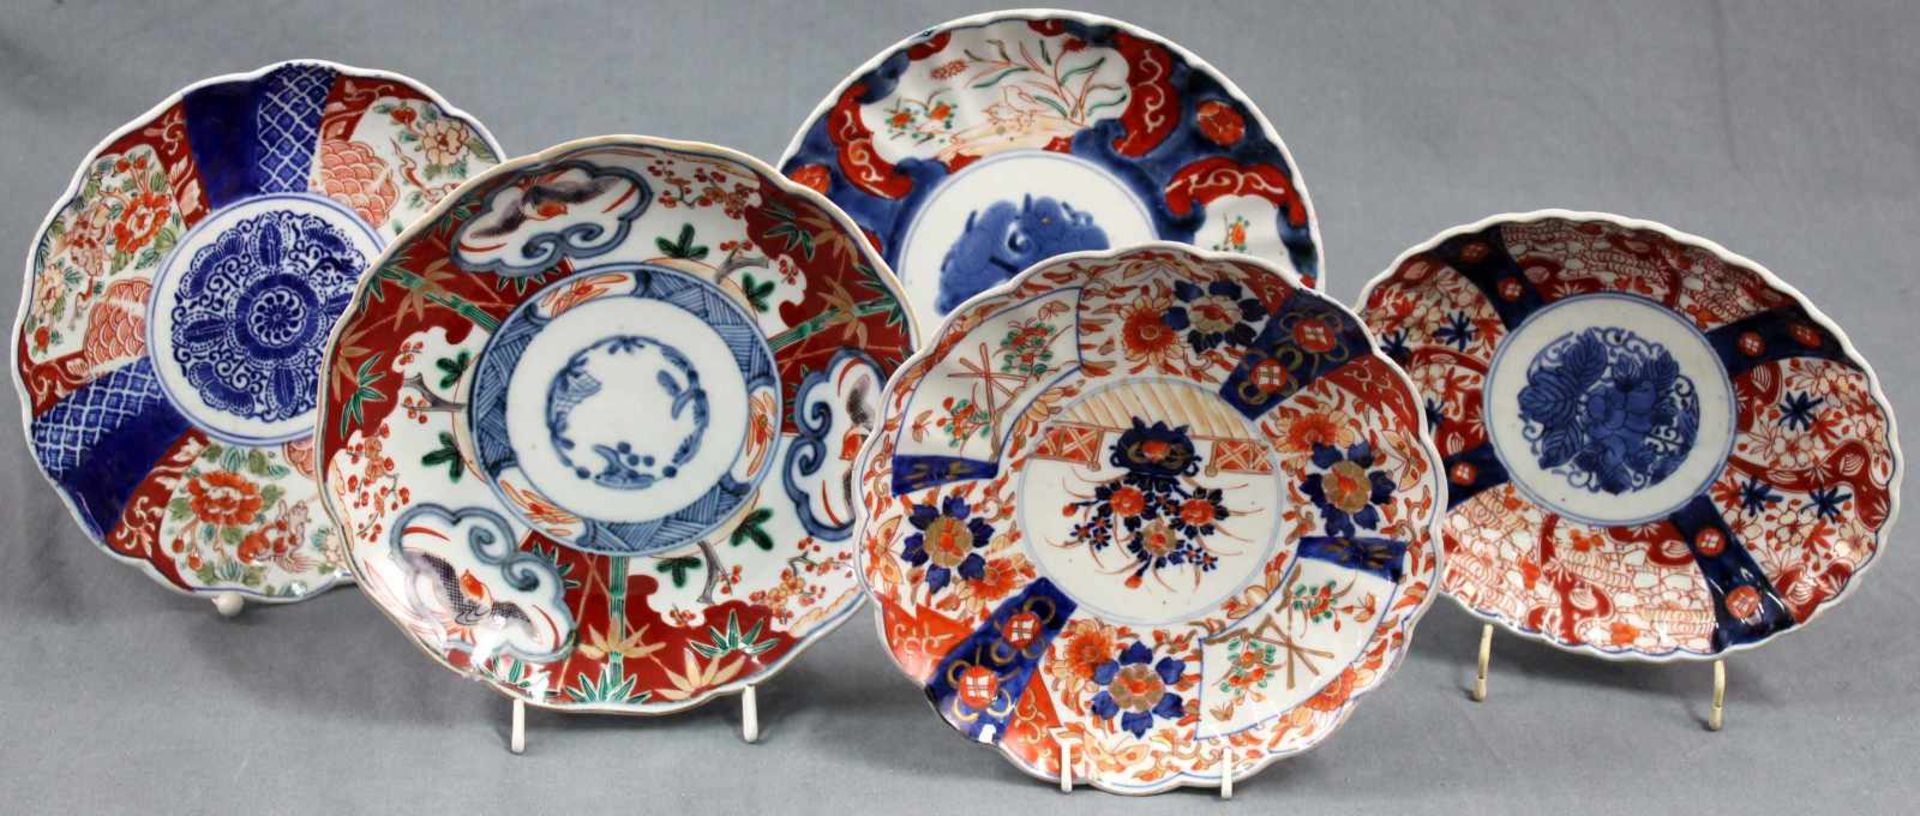 4 Teller und 1 Schale. Porzellan. Wohl China, alt, XVIII - XIX. Bis 22 cm. 4 plates and 1 bowl.